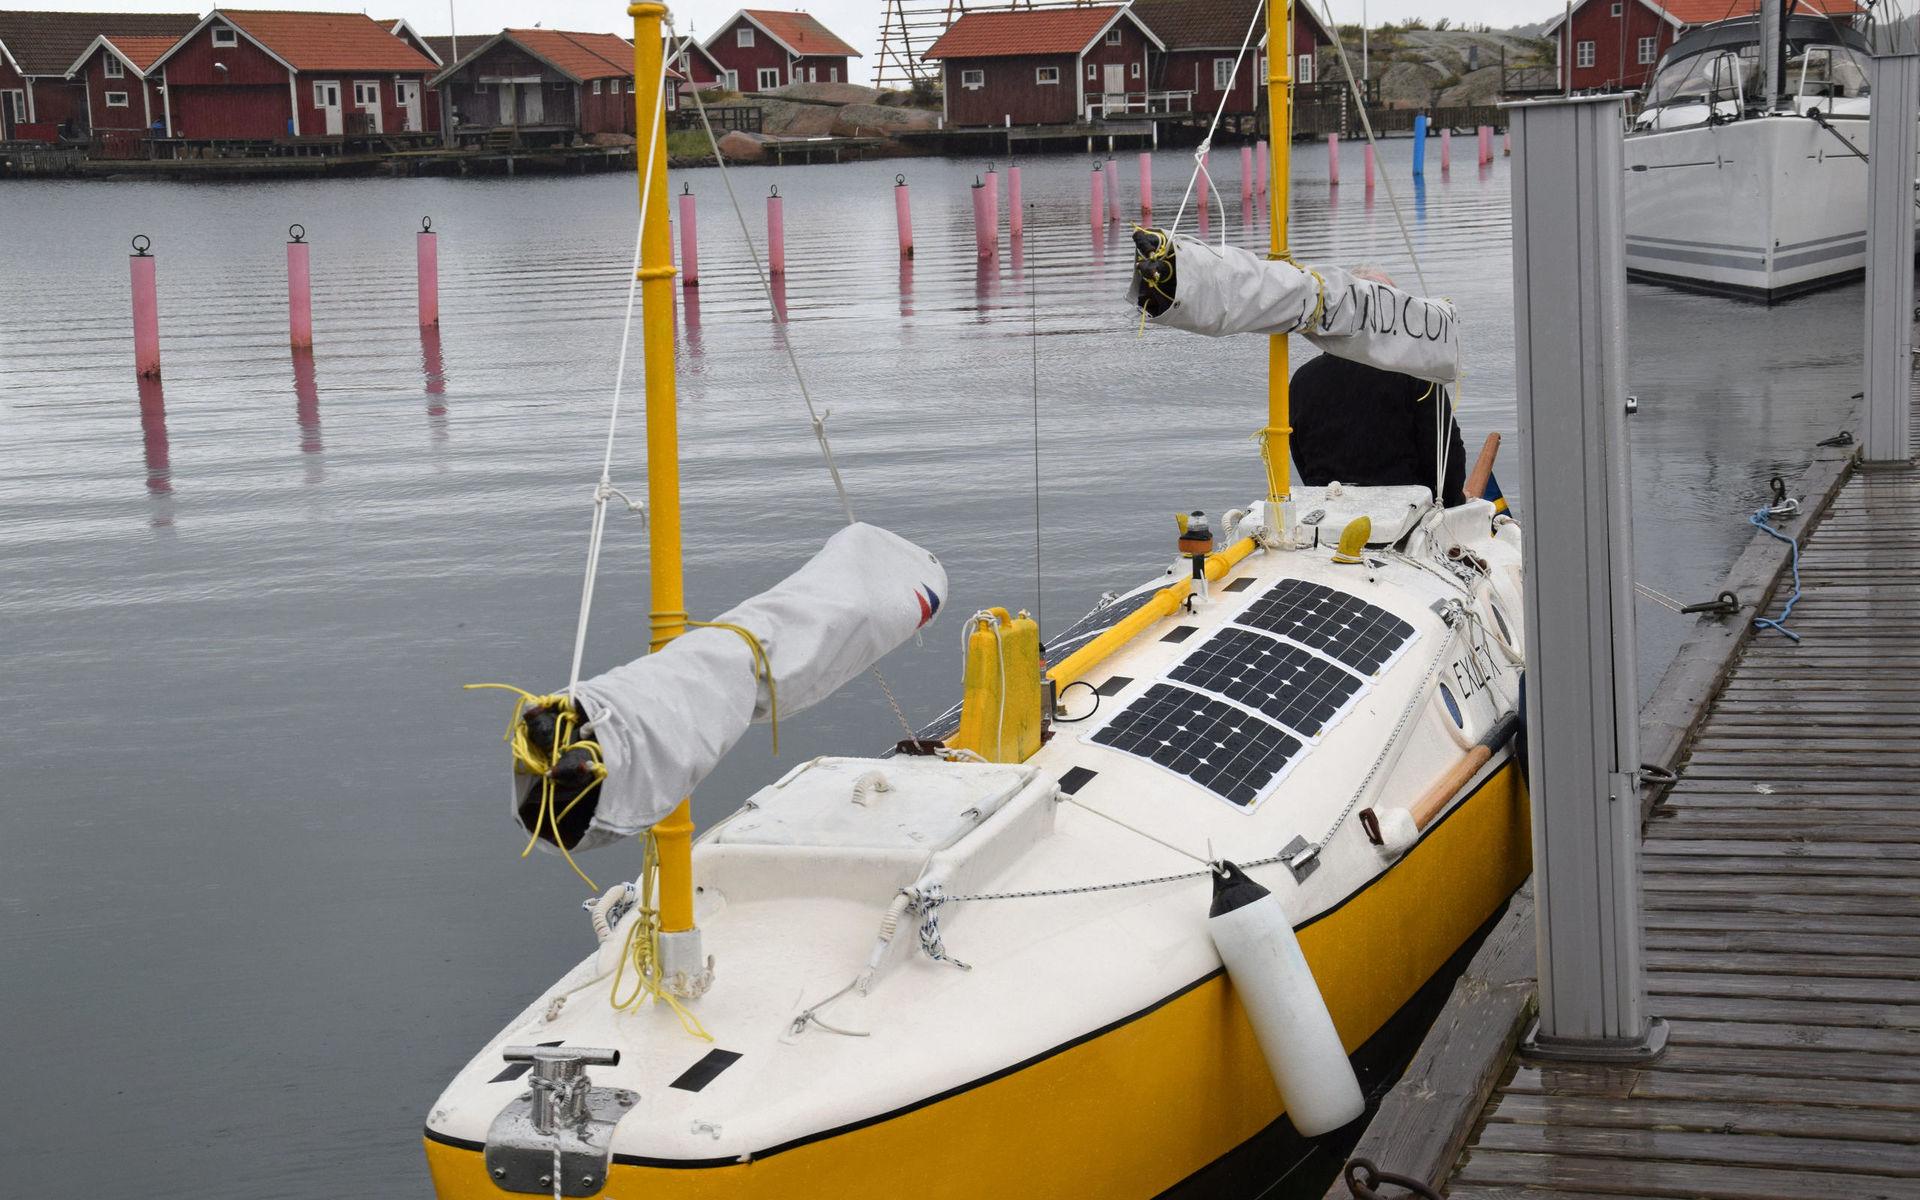 Exlex är en nykonstruktion säger Sven Yrvind, vars tidigare båt också hette Exlex och liknaden den nya som nu ligger i Hunneborstrand.